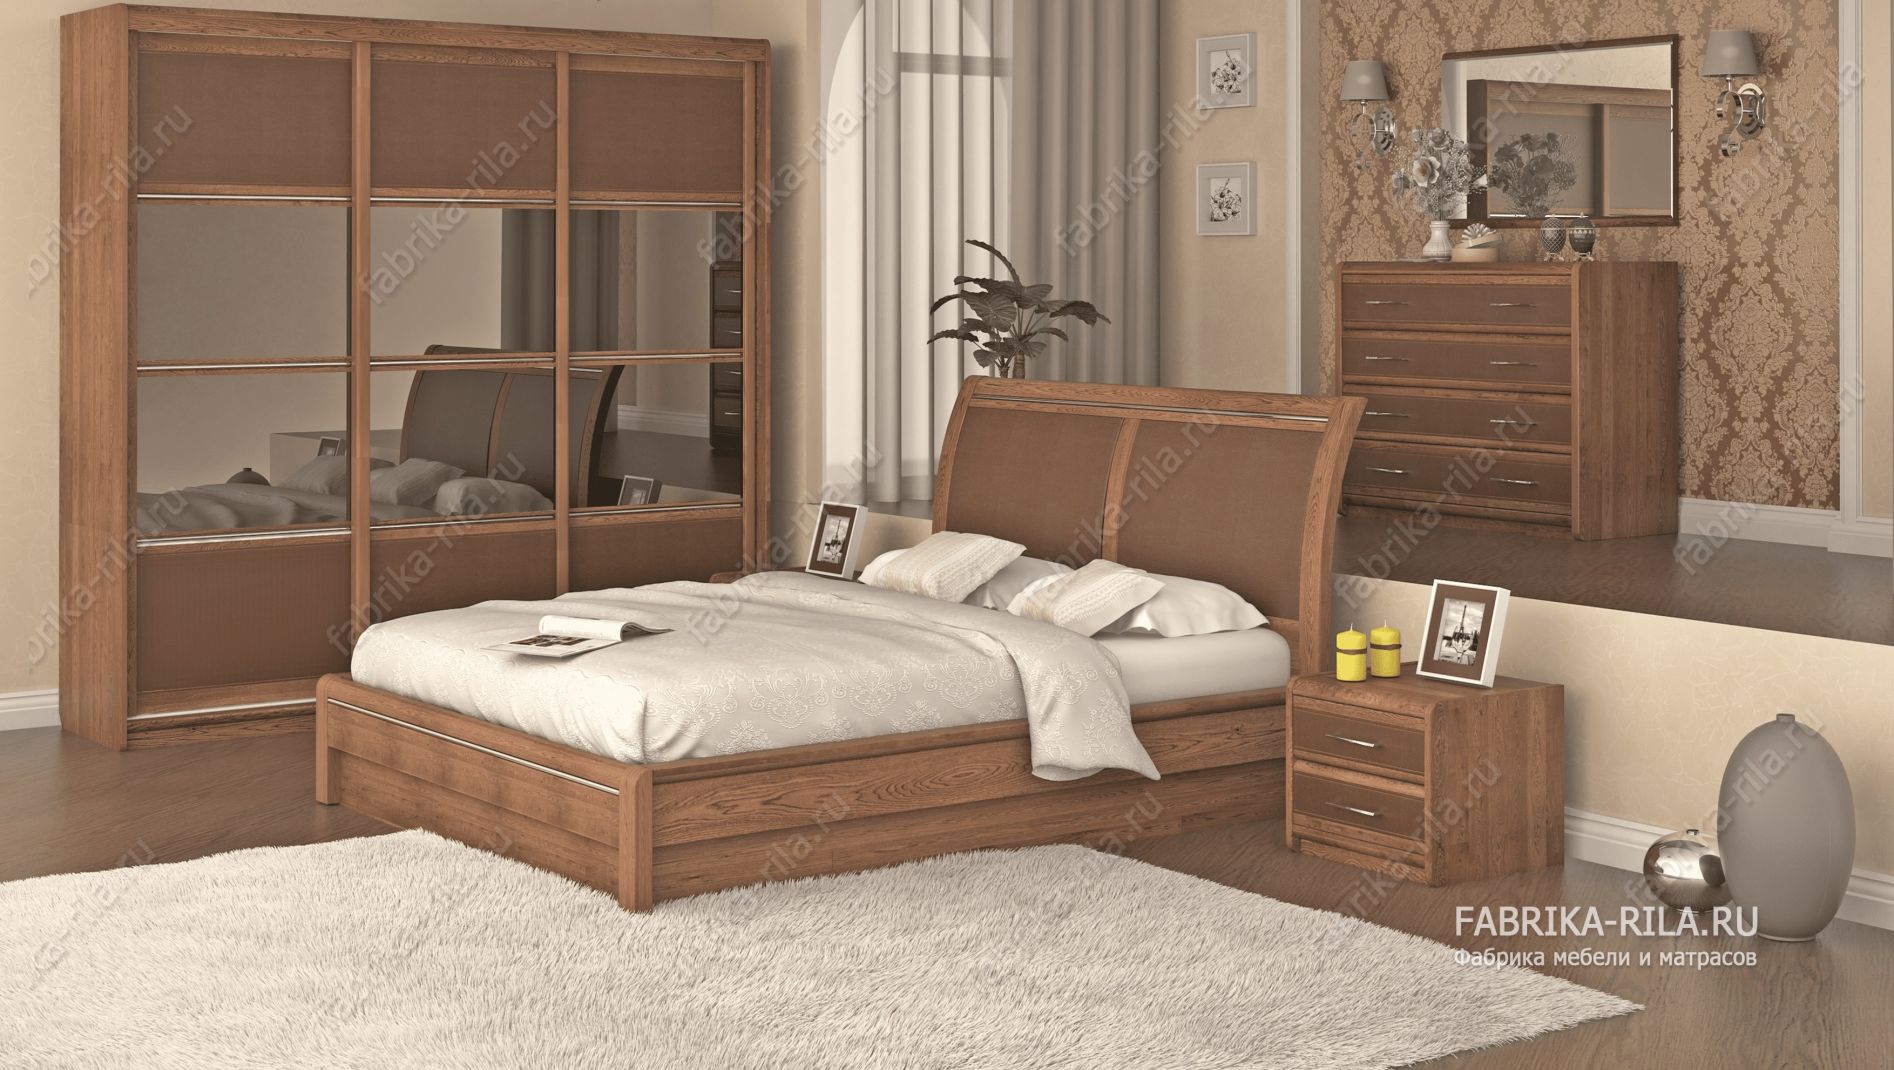 кровать Okaeri 6 см— 90x200 см. из сосны